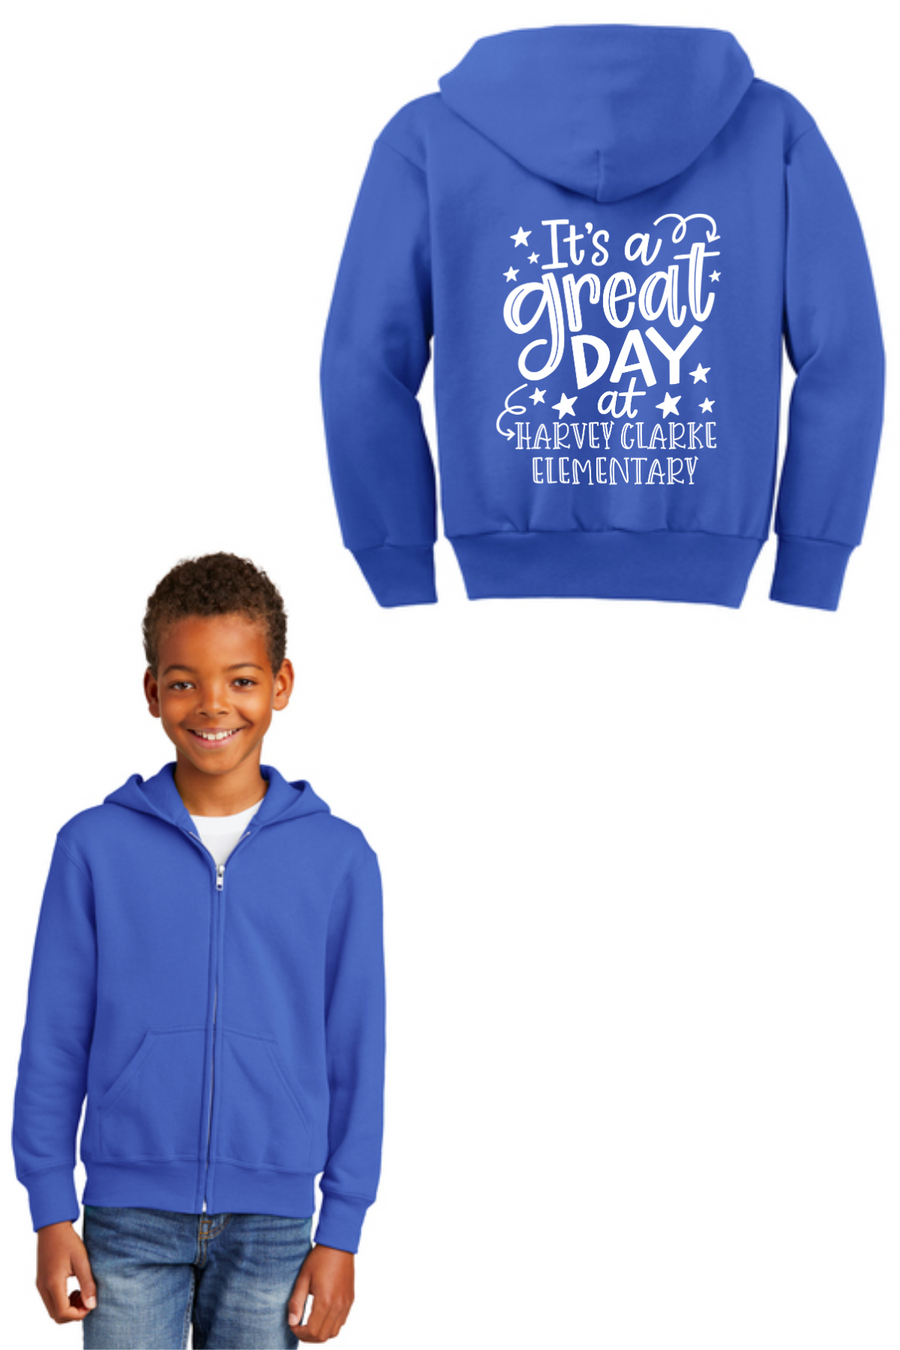 Harvey Clarke Elementary 2023-2024-Unisex Full-Zip Hooded Sweatshirt Its a great day Logo